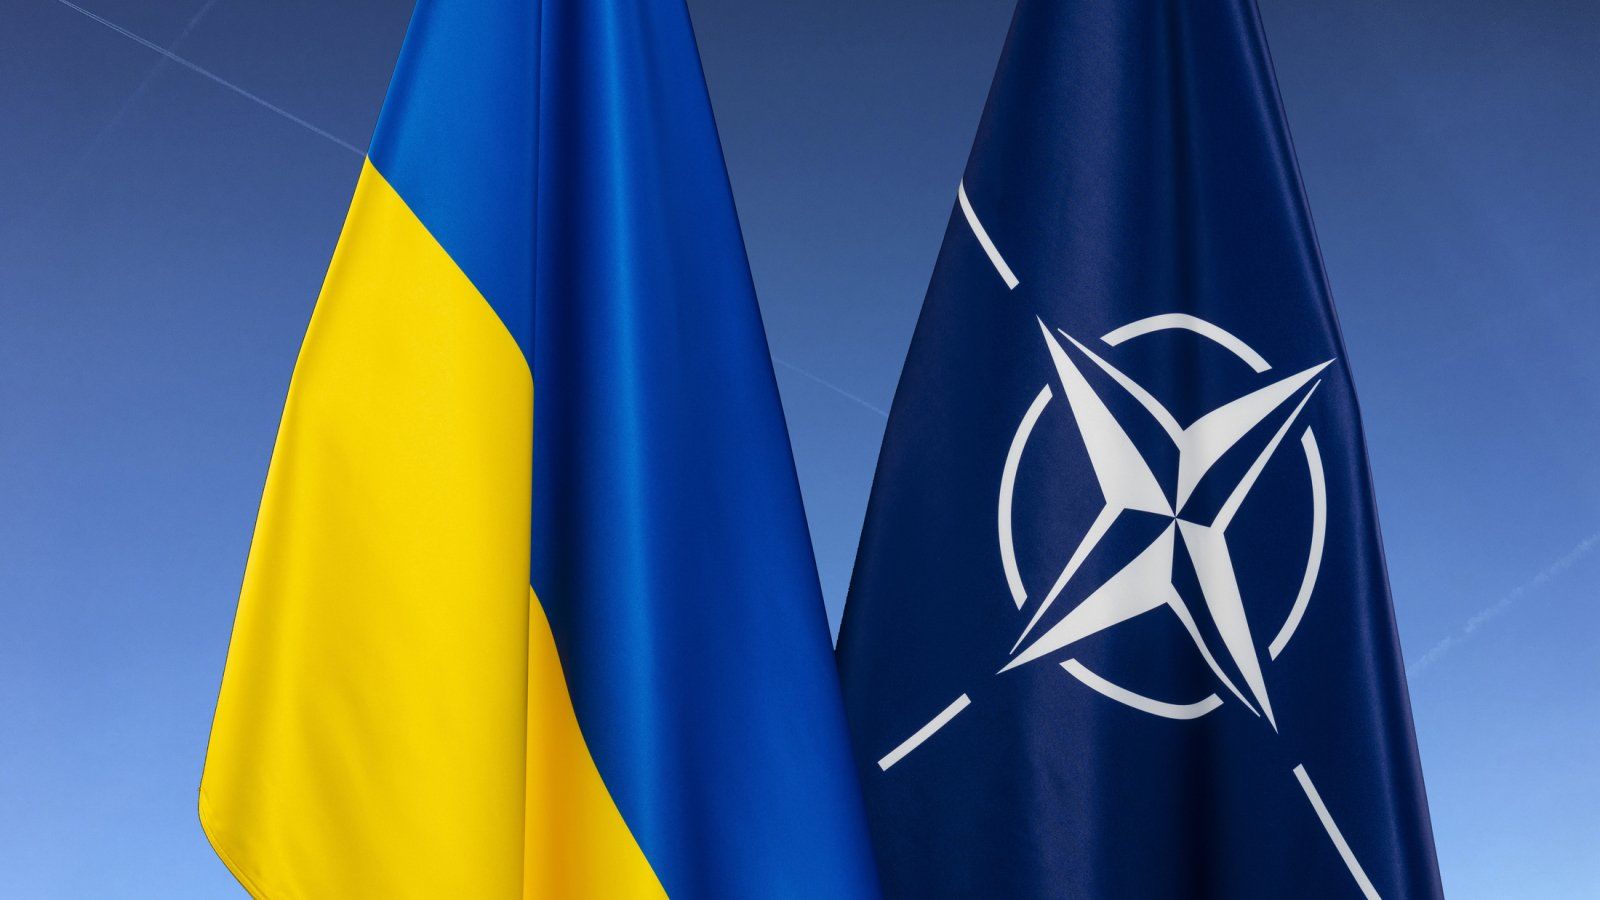 "Украина защищает НАТО", – Борис Пинкус высказал мнение по поводу возможного членства Украины в Альянсе